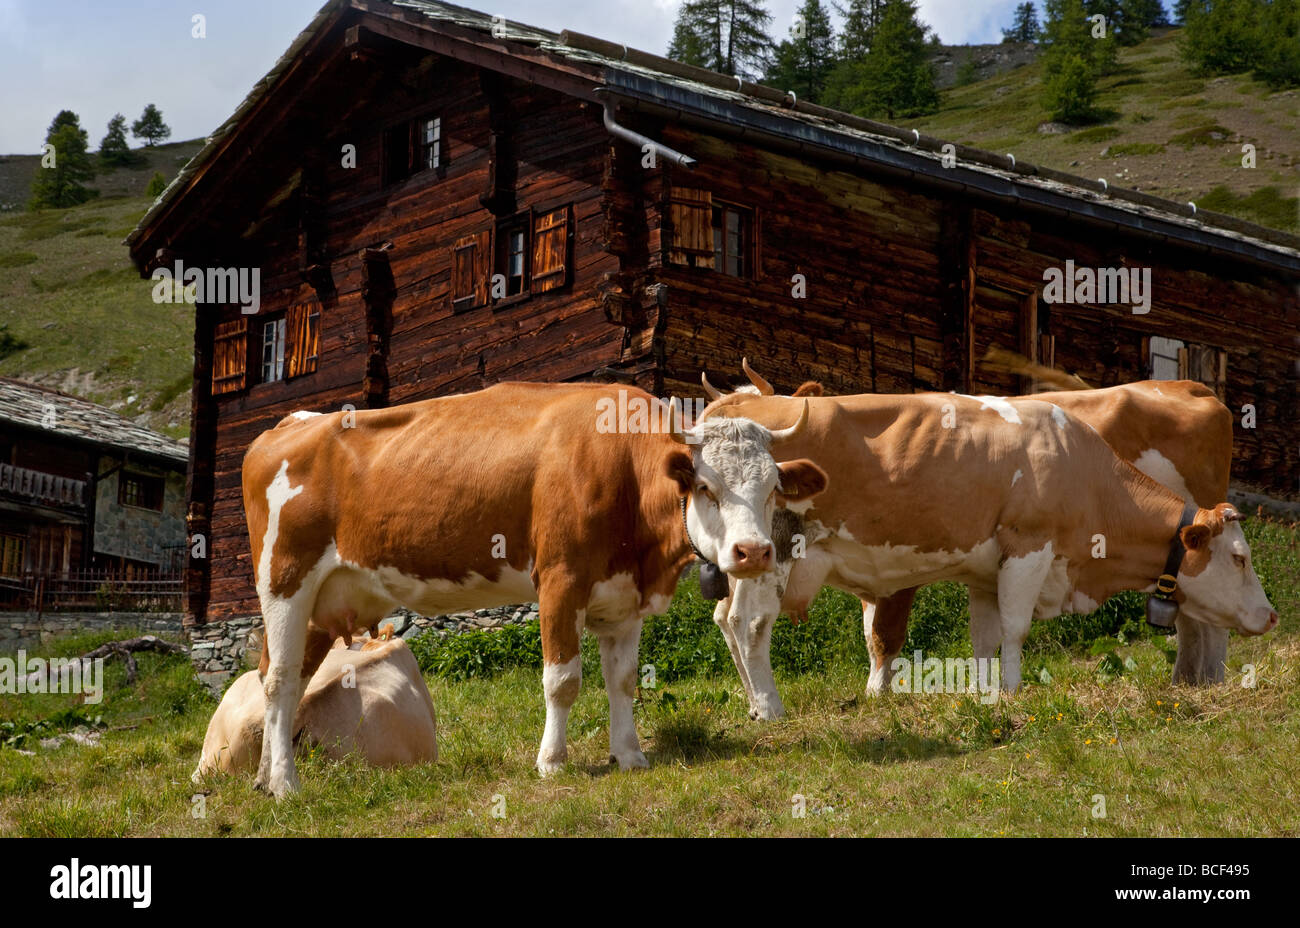 Vacche con campane accanto a swiss casa in legno sulla collina, Zermatt, Svizzera, Europa. Foto Stock